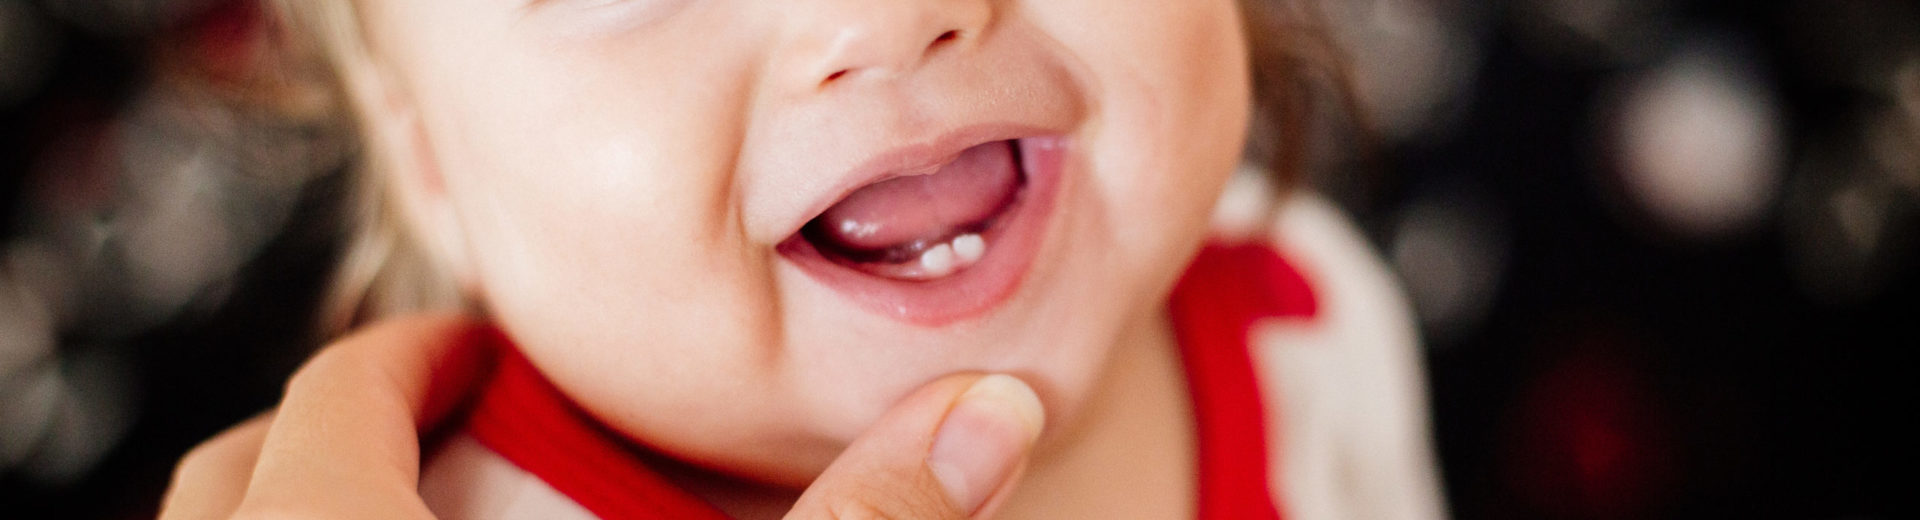 Aiuto cura dei denti nei primi anni di vita